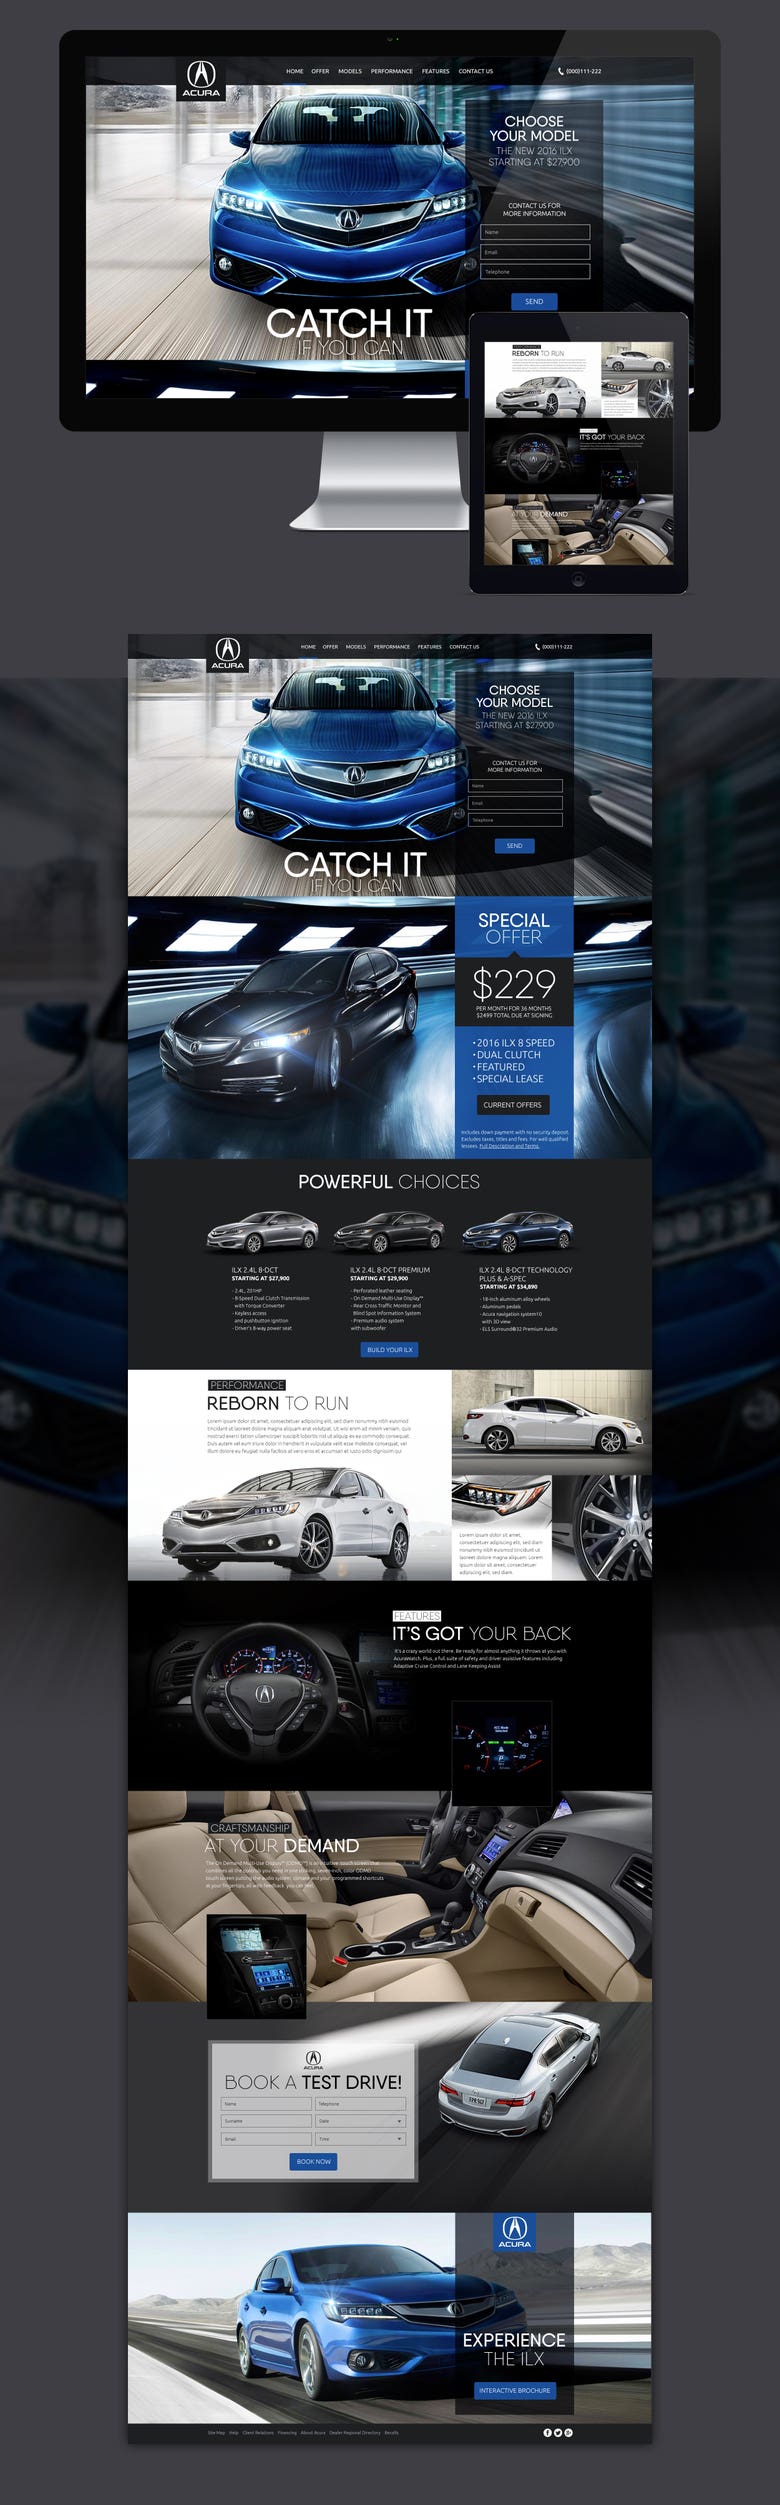 Acura website mockup